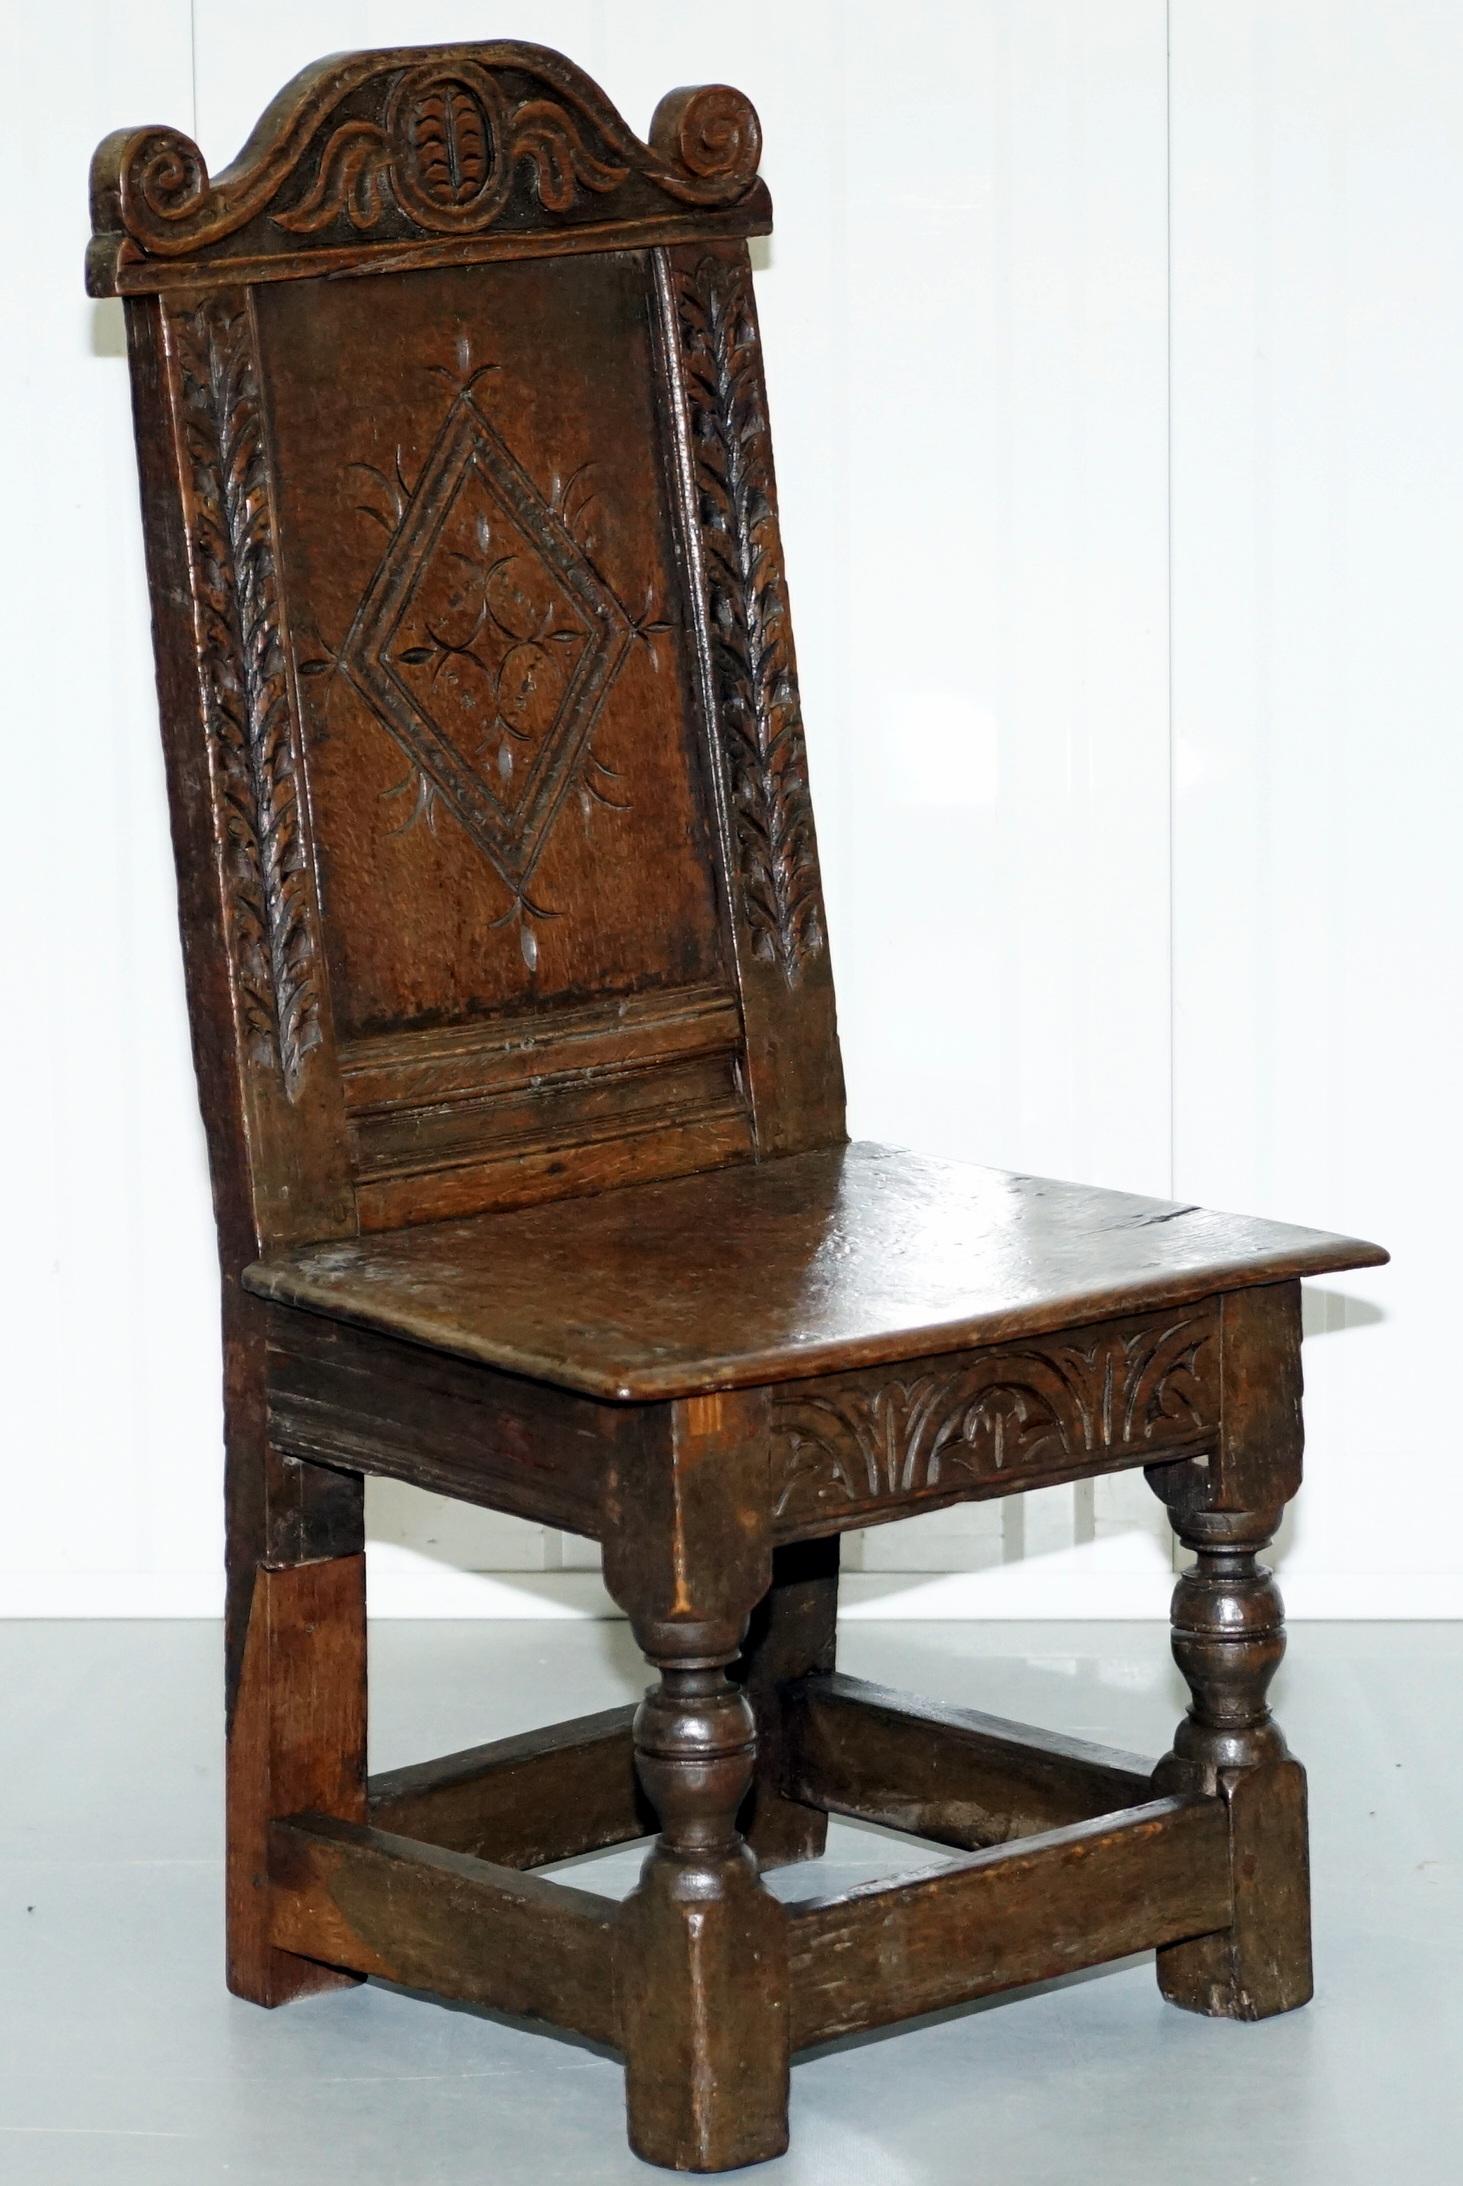 Nous sommes ravis d'offrir à la vente cette très rare petite chaise d'appoint en bois de fruitier sculptée à la main vers 1760.

Une pièce de belle apparence et de bonne facture, la patine du bois est à tomber par terre, vous n'obtenez cet aspect